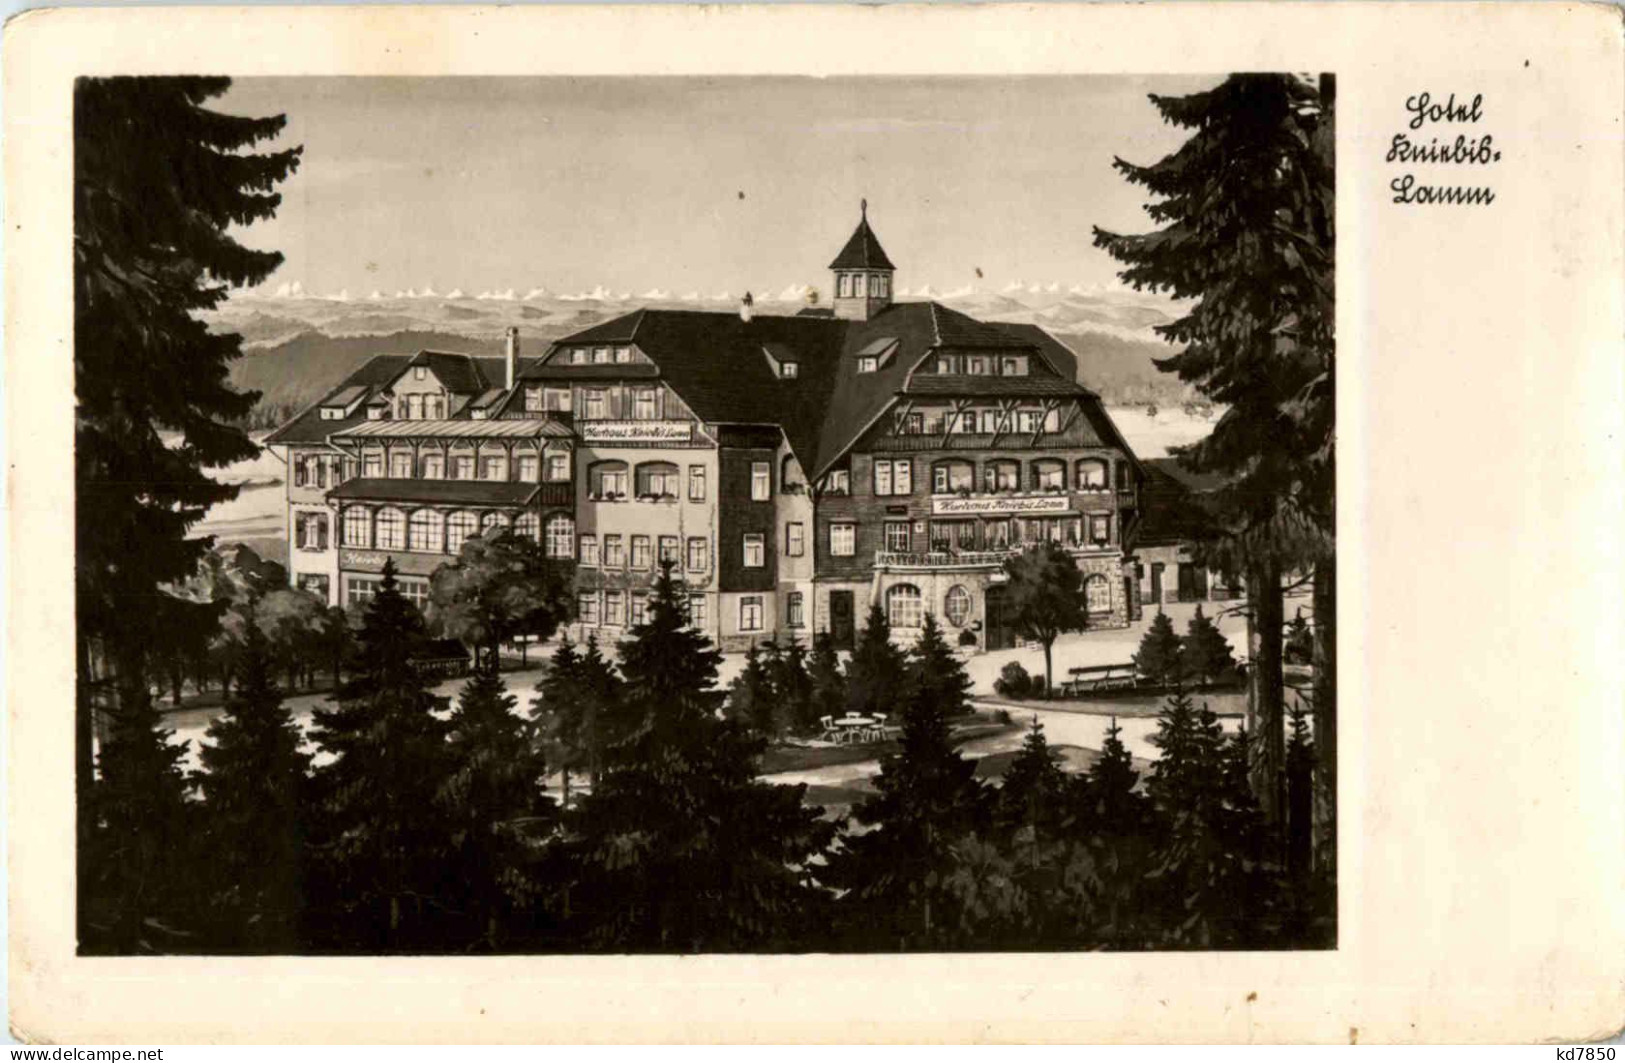 Hotel Kniebis Lamm - Baiersbronn